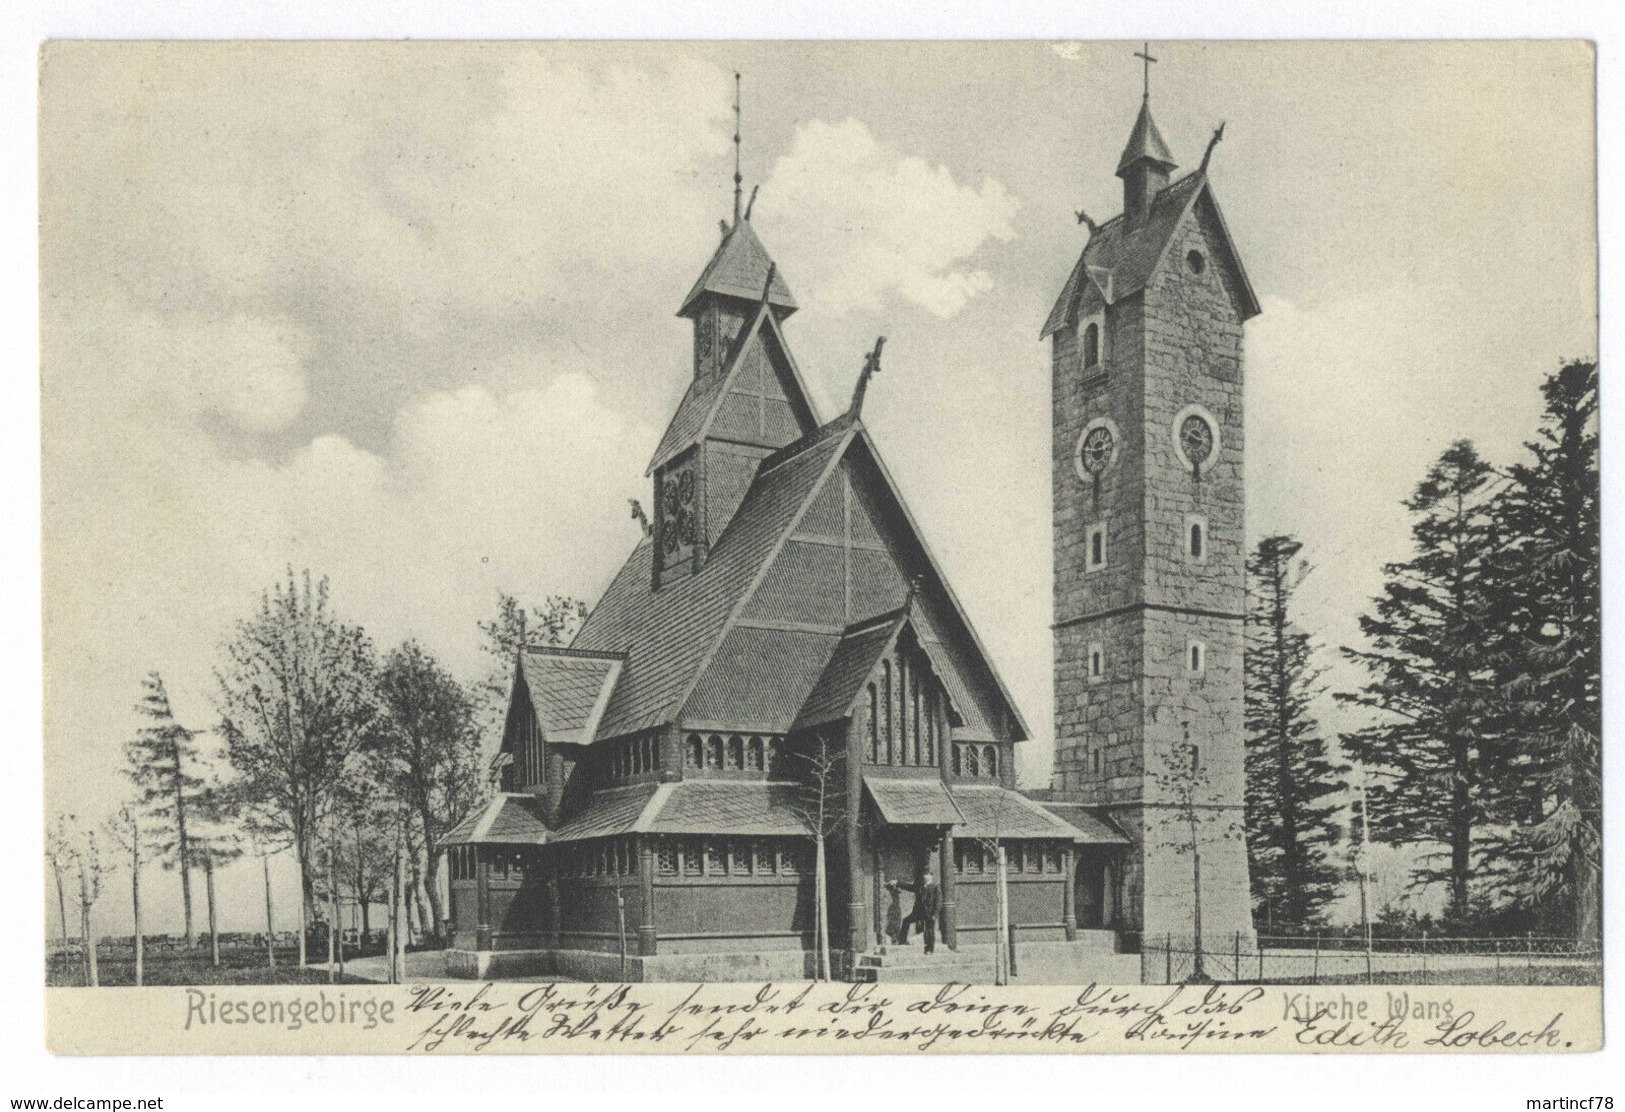 Riesengebirge Kirche Wang 1907 Krummhübel Karpacz Schlesien Ansichtskarte - Schlesien